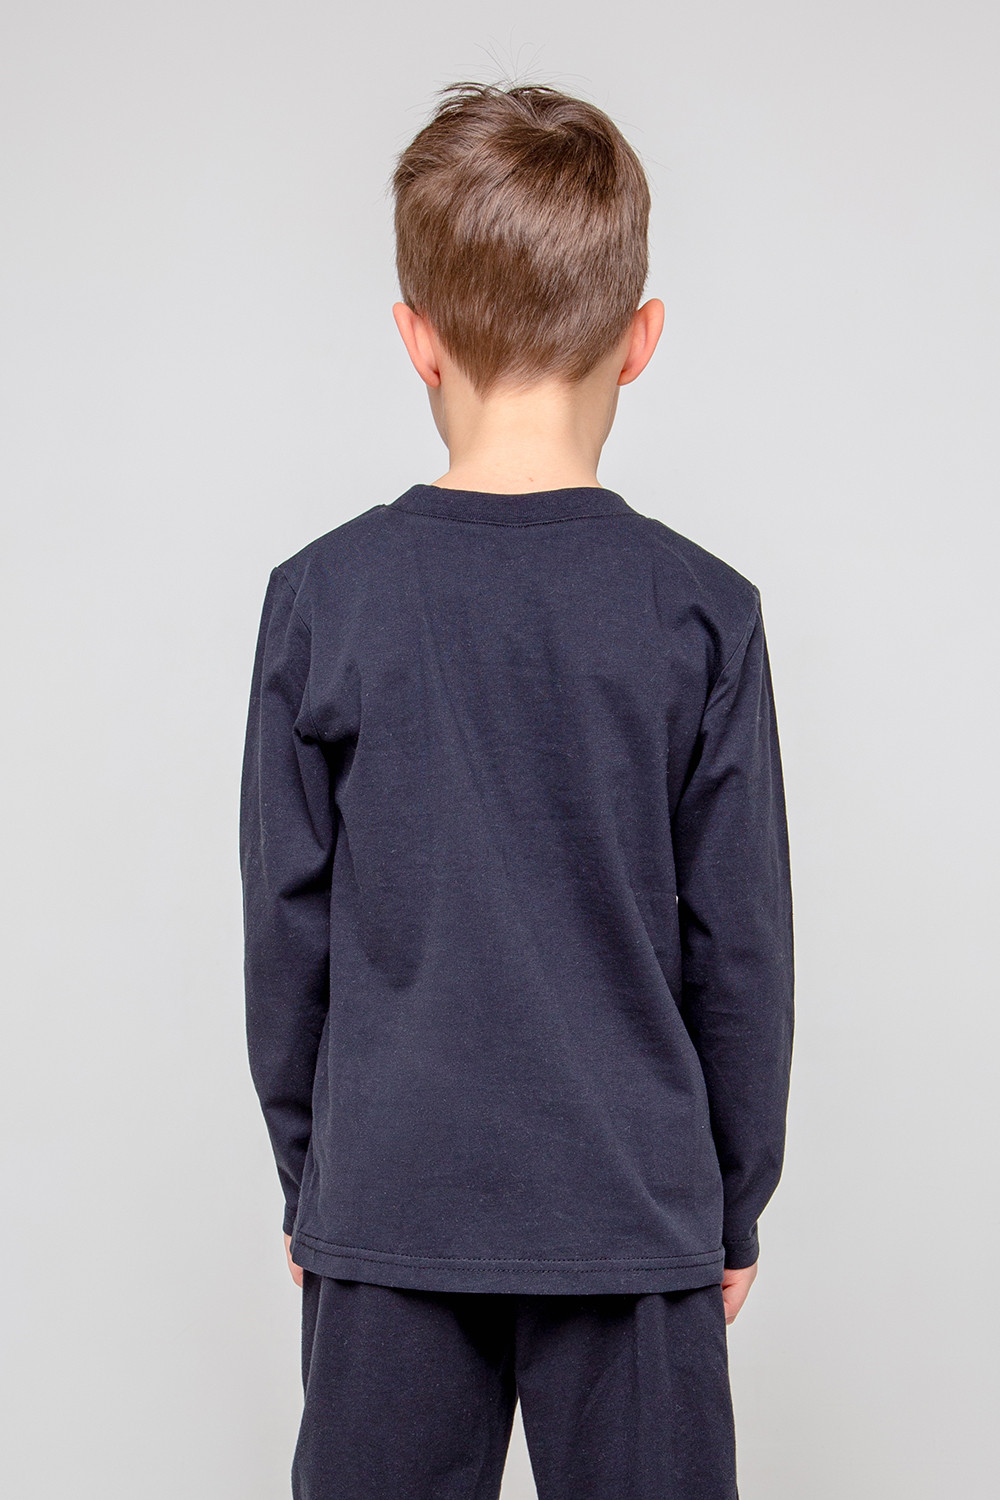 картинка Джемпер для мальчика Crockid КР 301910-1 черный к356 от магазина детских товаров ALiSa